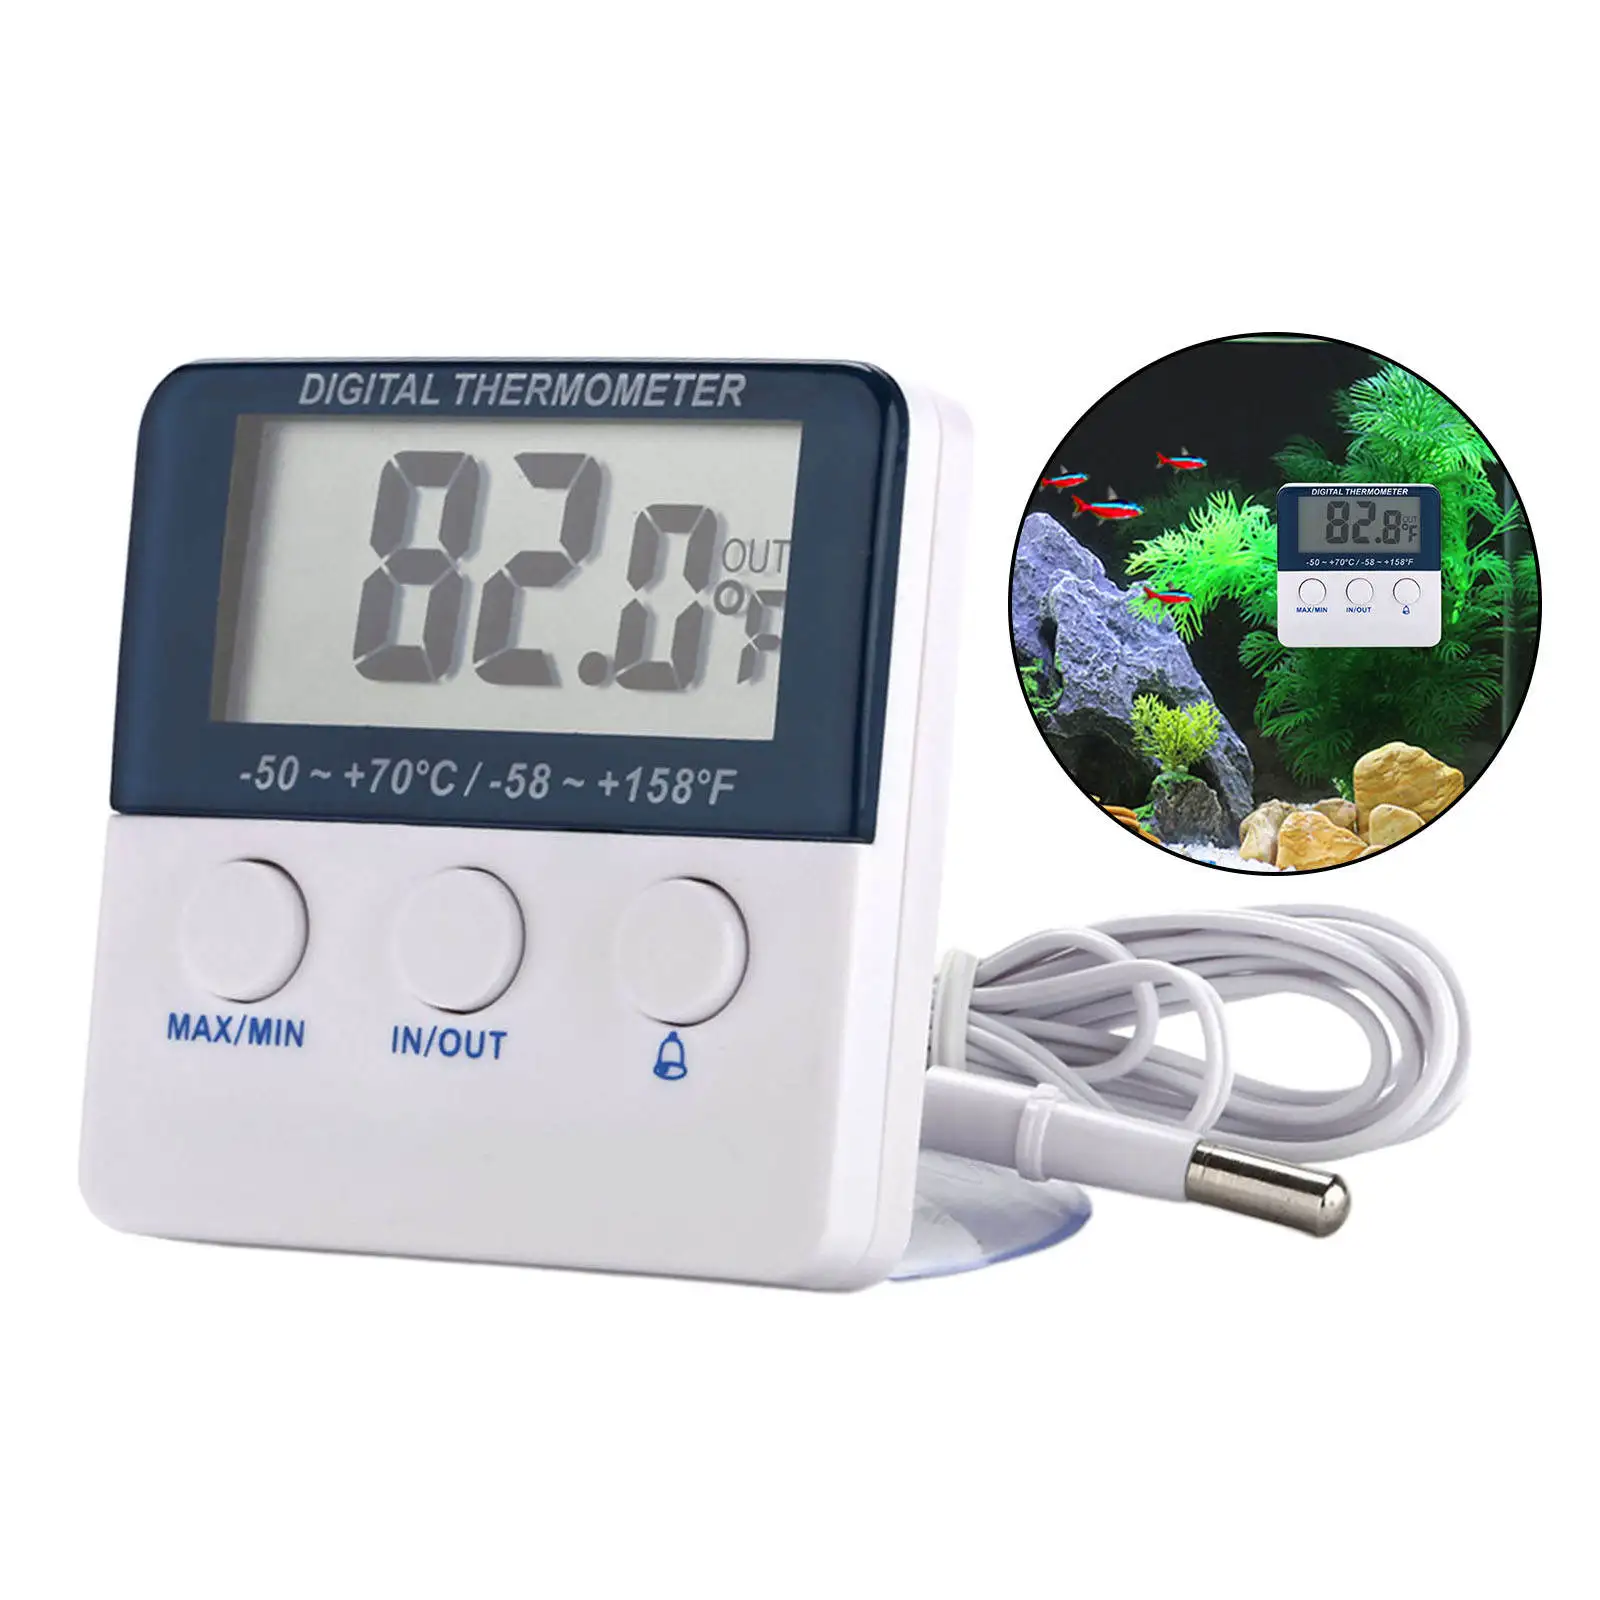 Electronic Temperature Sensor Digital with Alarm Function Temperature Monitor for Fridge Aquarium Tank Water Terrarium